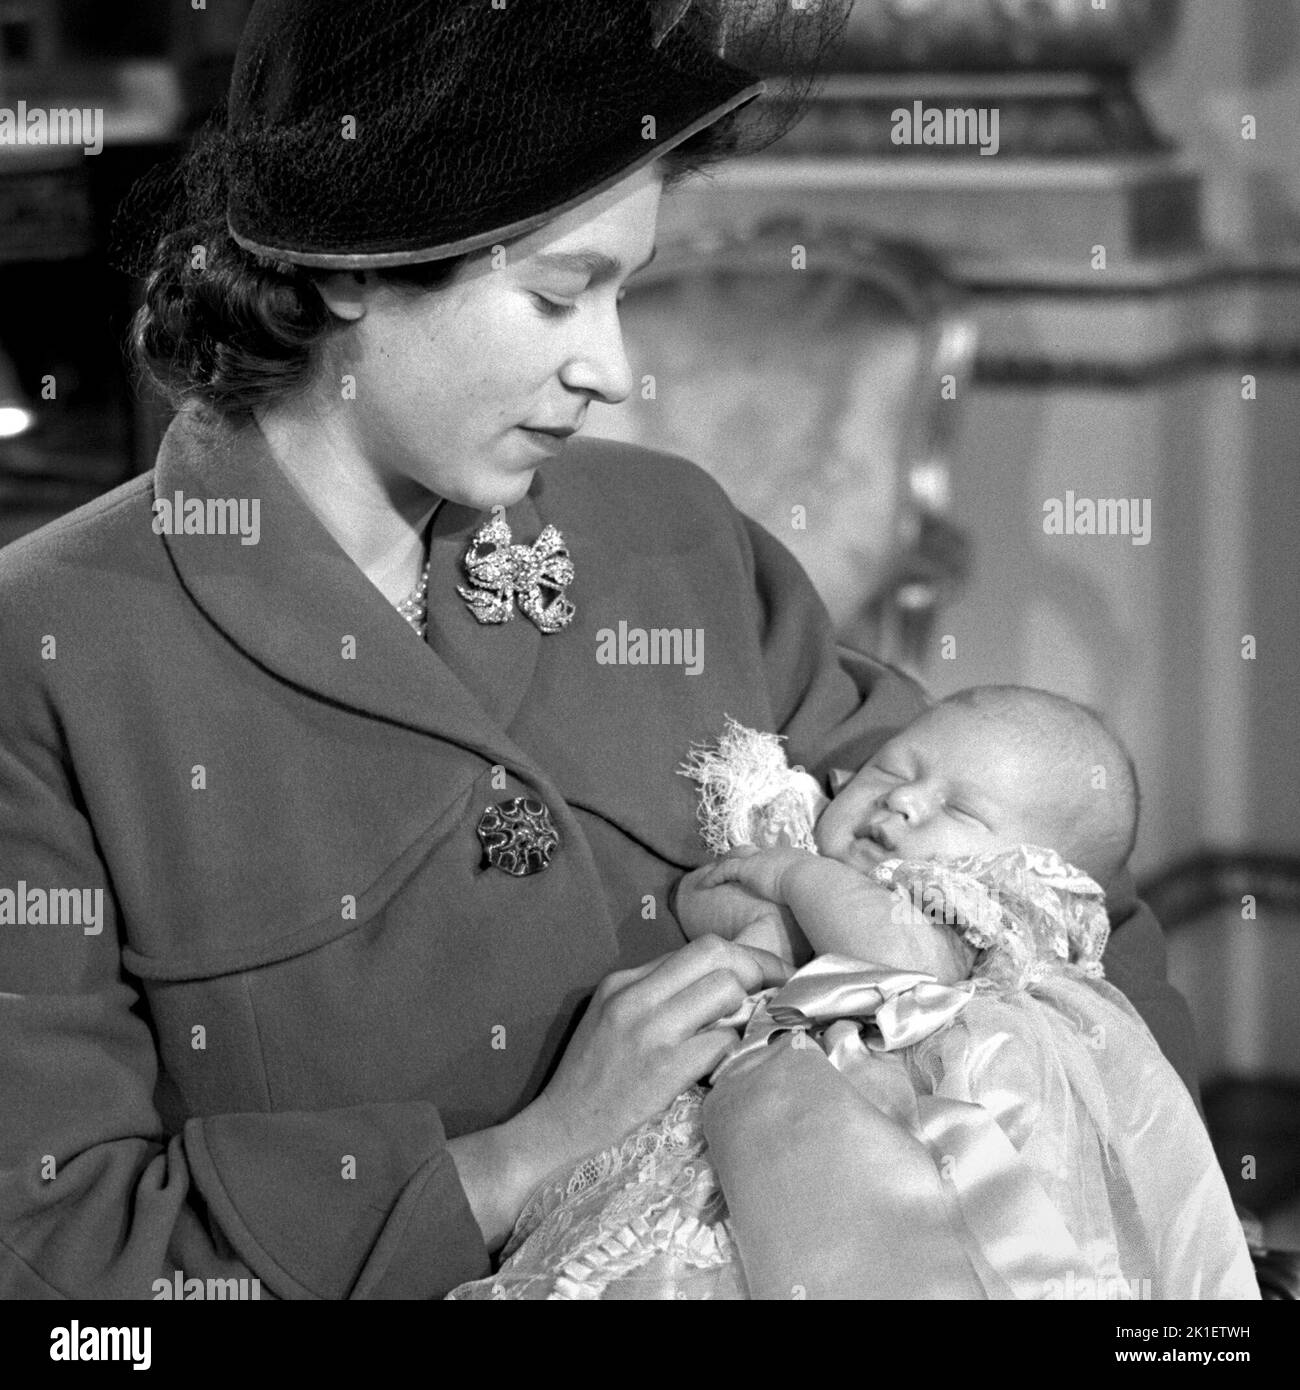 Foto de archivo fechada el 15/12/1948 de la Princesa Isabel (ahora Reina Isabel II) que sostiene a su hijo el Príncipe Carlos después de su ceremonia de bautizo en el Palacio de Buckingham. Fecha de emisión: Domingo 18 de Septiembre de 2022.. El crédito de la foto debe decir: PA Wire Foto de stock